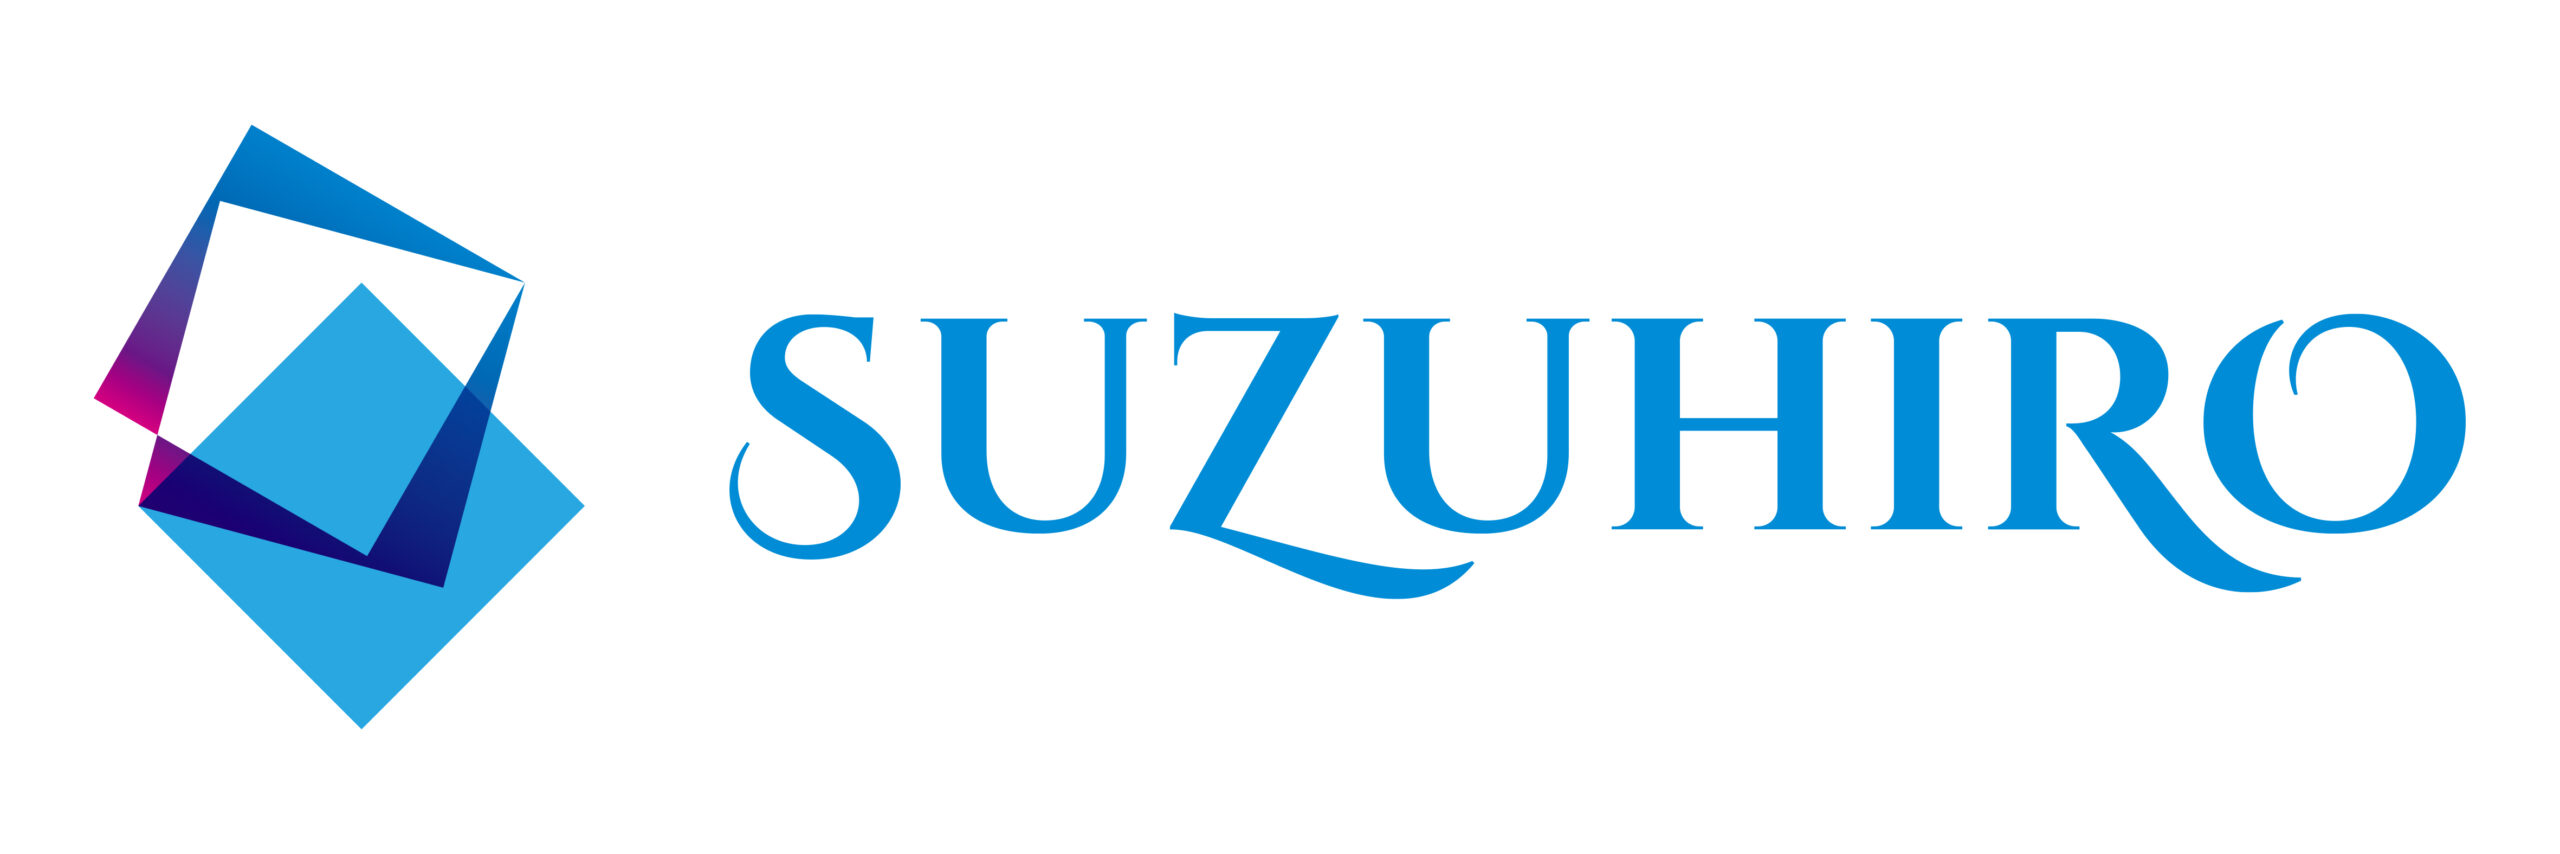 株式会社スズヒロ製作のロゴ